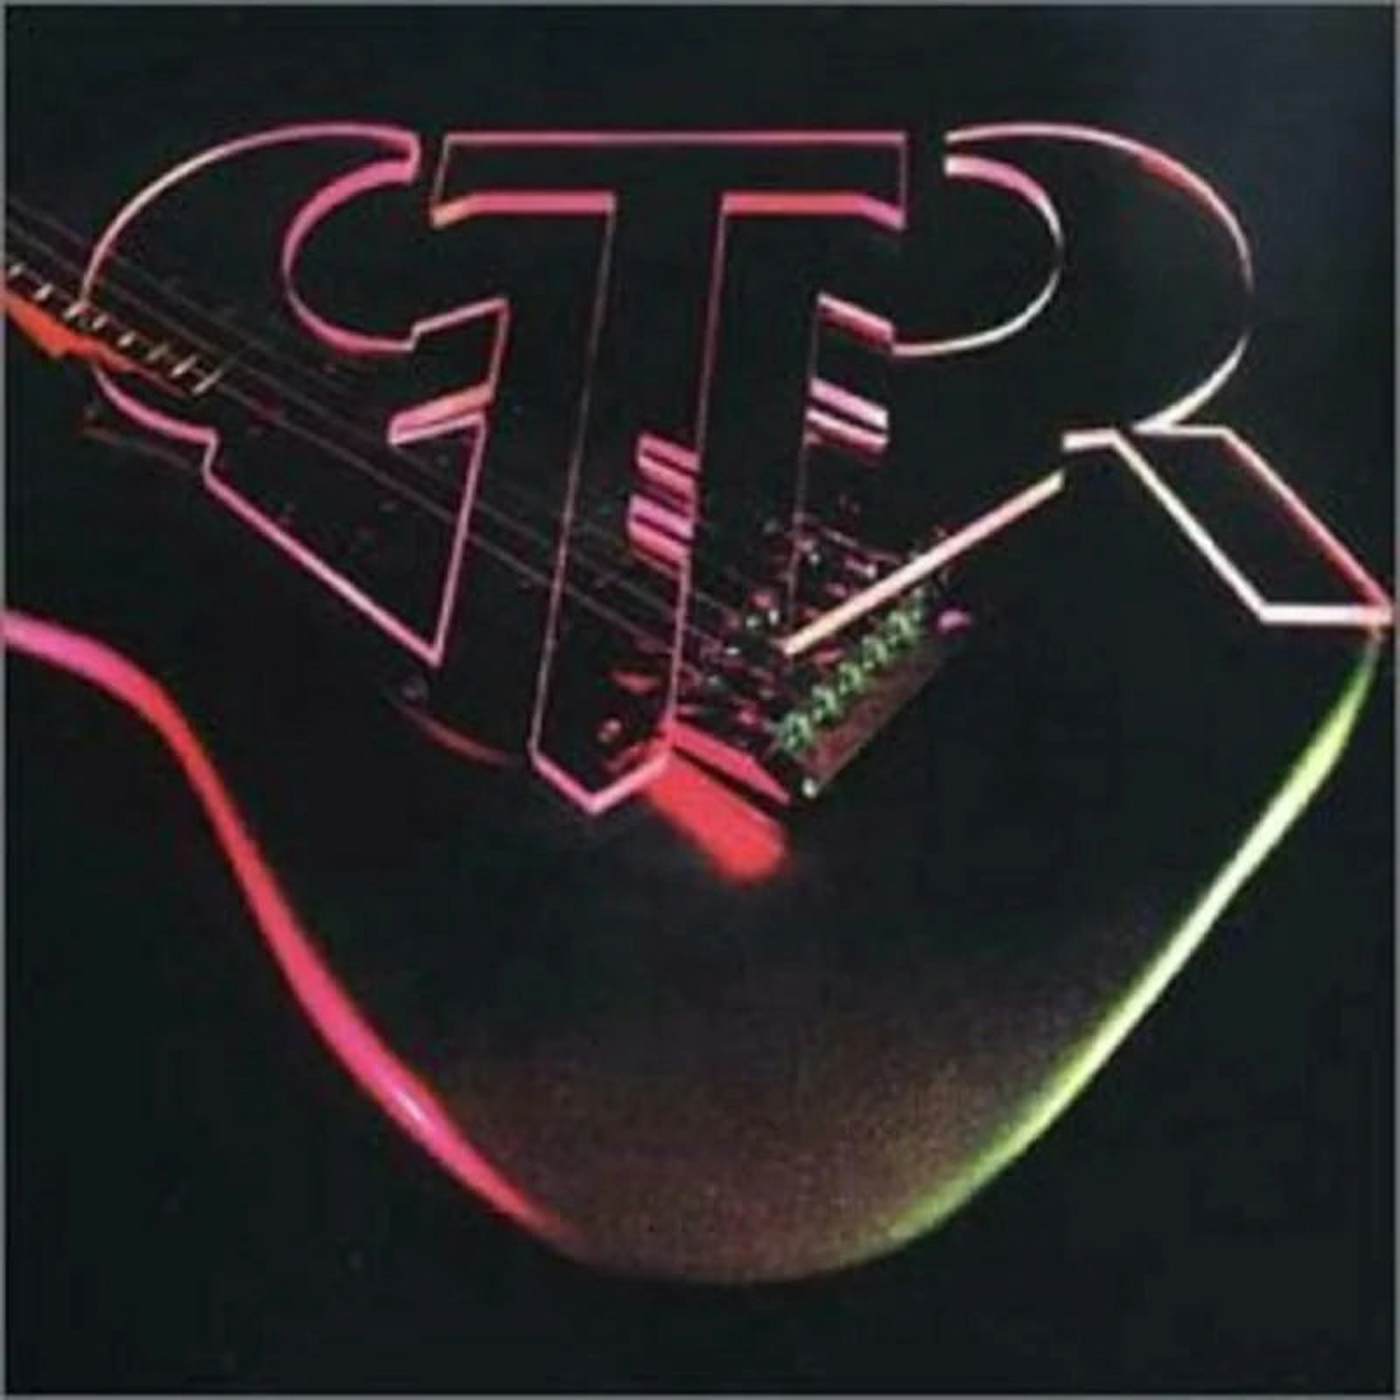 Gtr LP - Gtr (Vinyl)